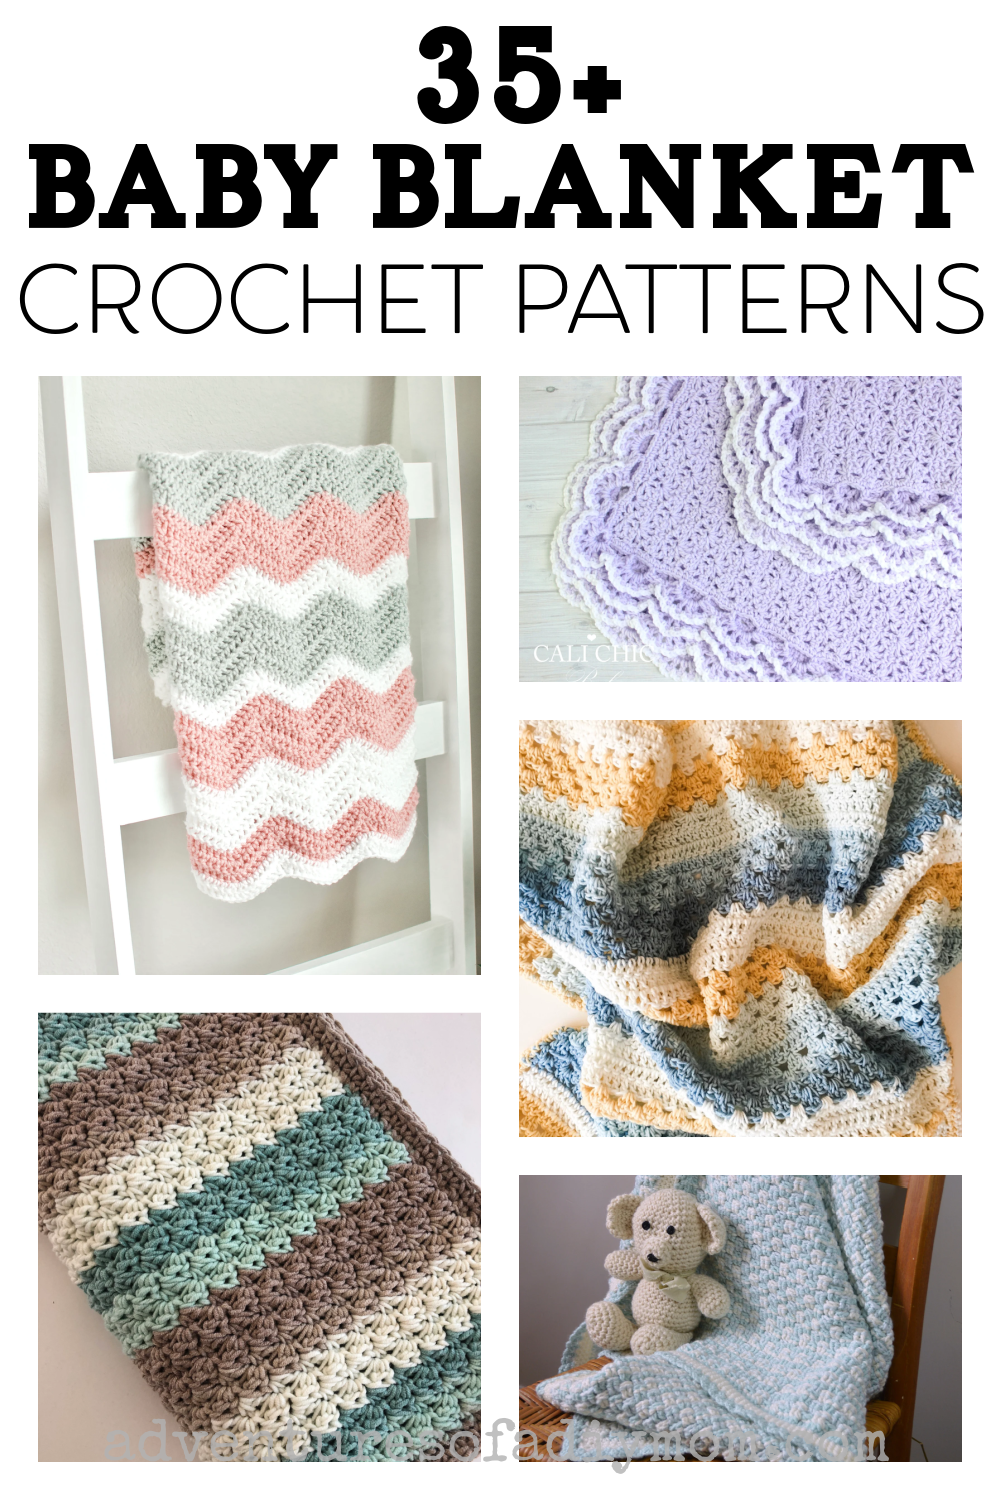 Free Crochet Baby Blanket Pattern - Crochet Dreamz